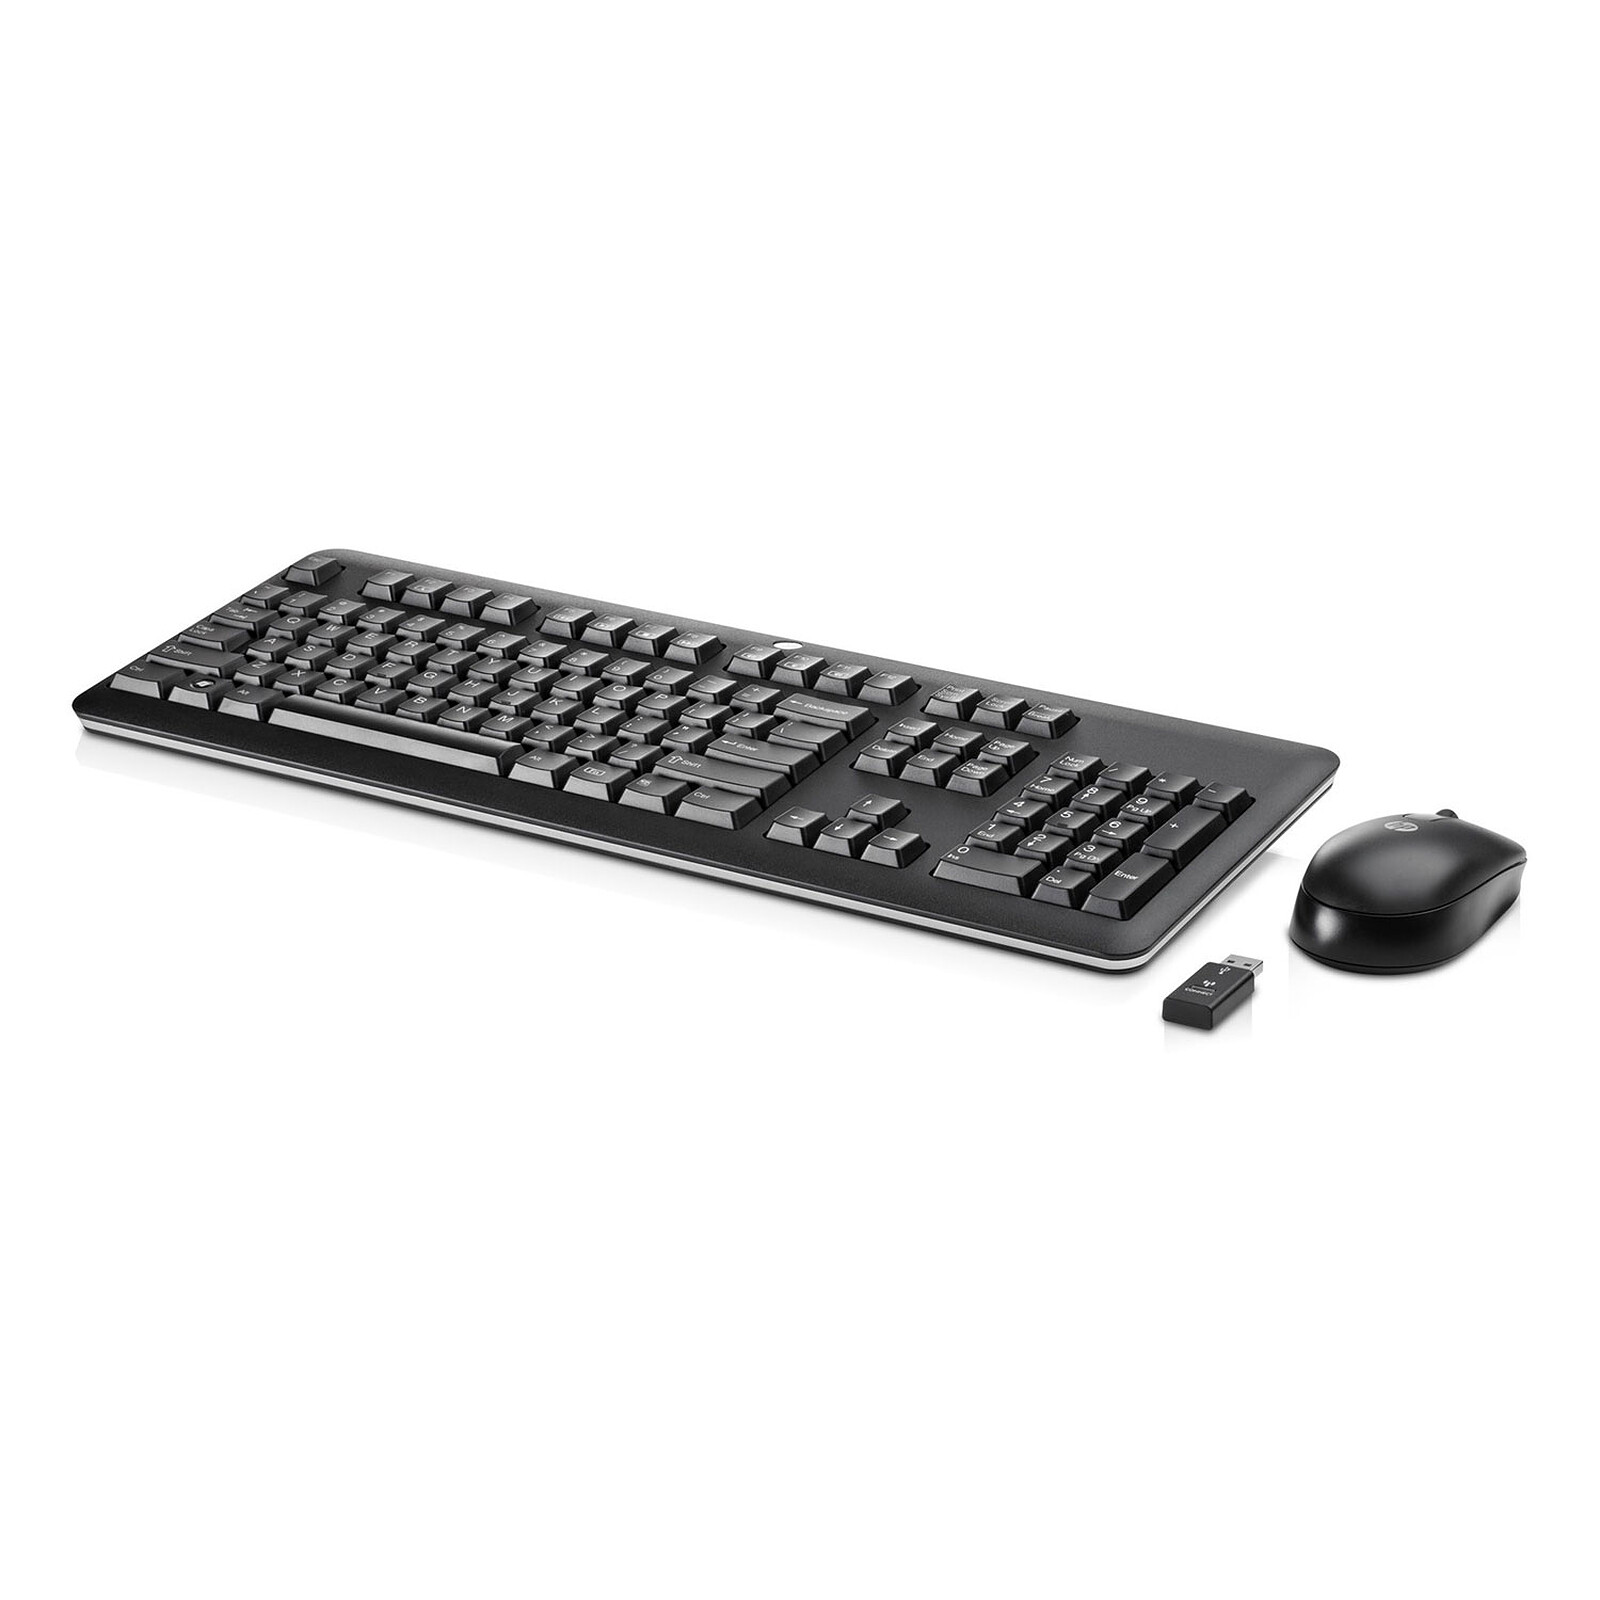 HP Clavier et souris sans fil (QY449AA) - Pack clavier souris